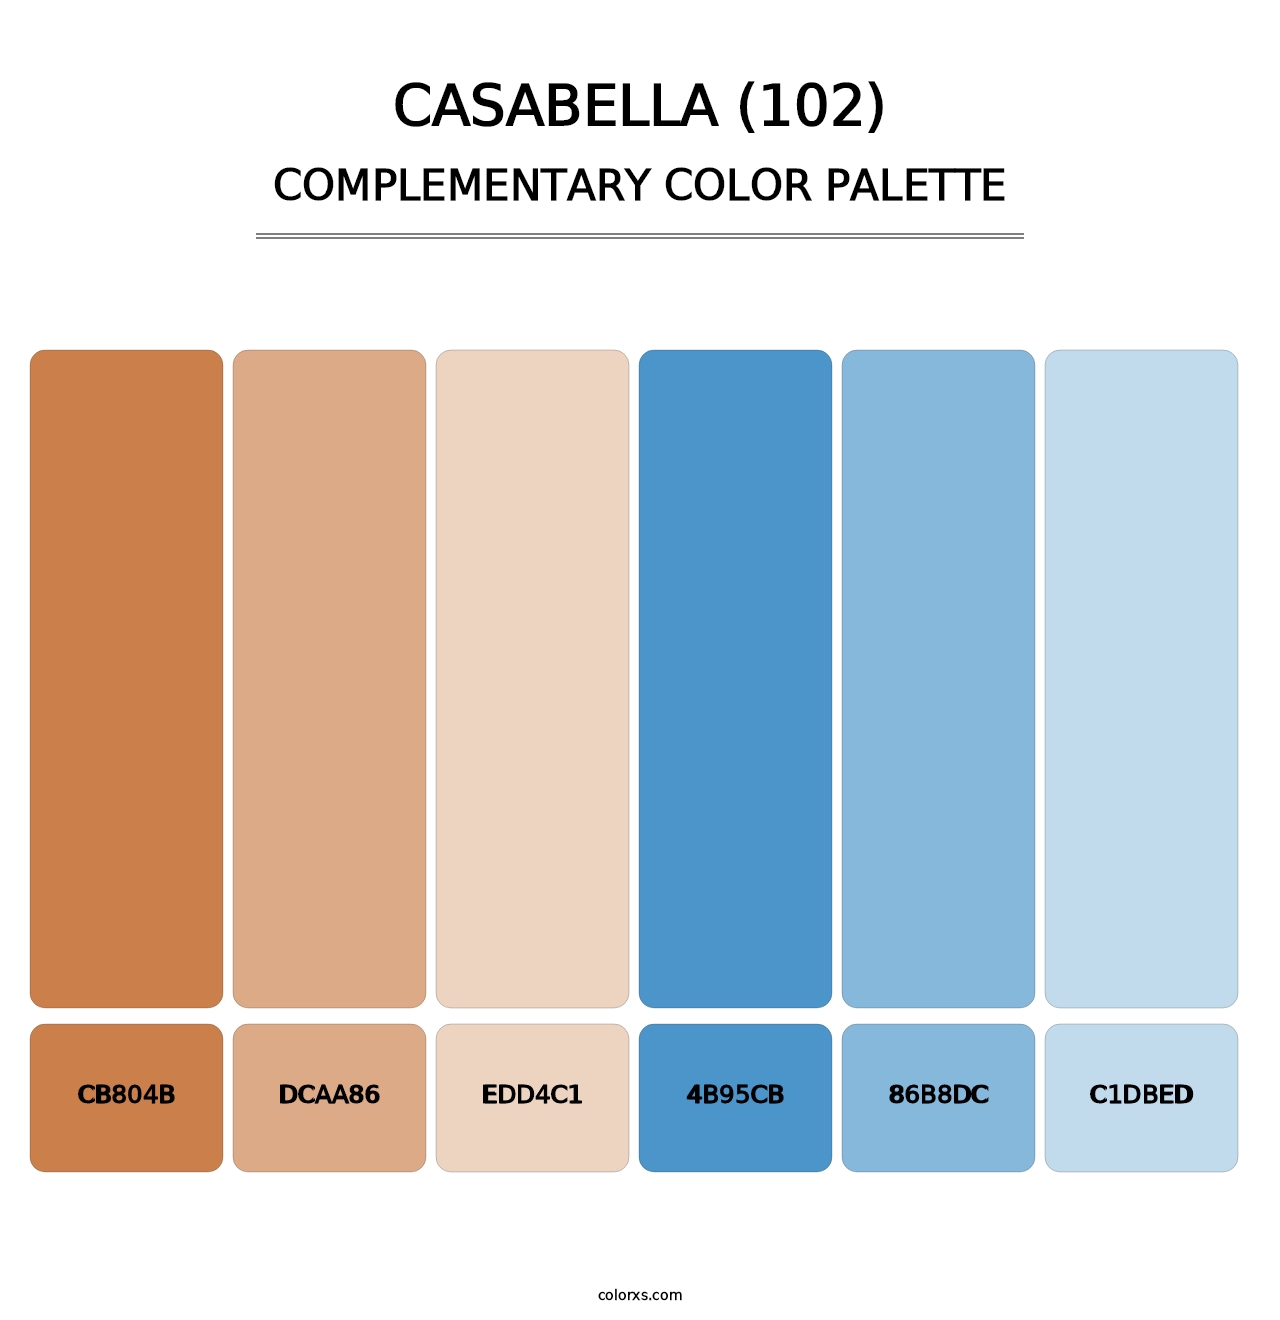 Casabella (102) - Complementary Color Palette